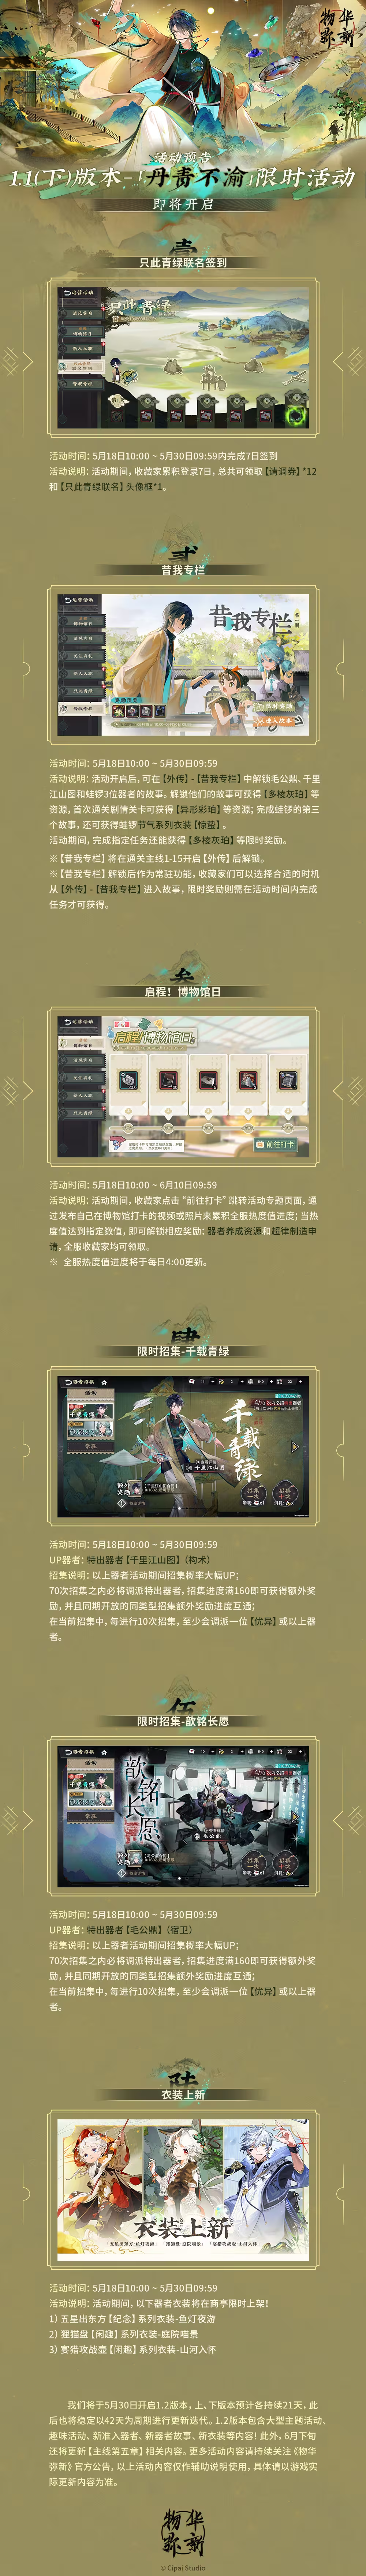 《物华弥新》1.1（下）版本-「丹青不渝」将于5月18日正式开启！.png